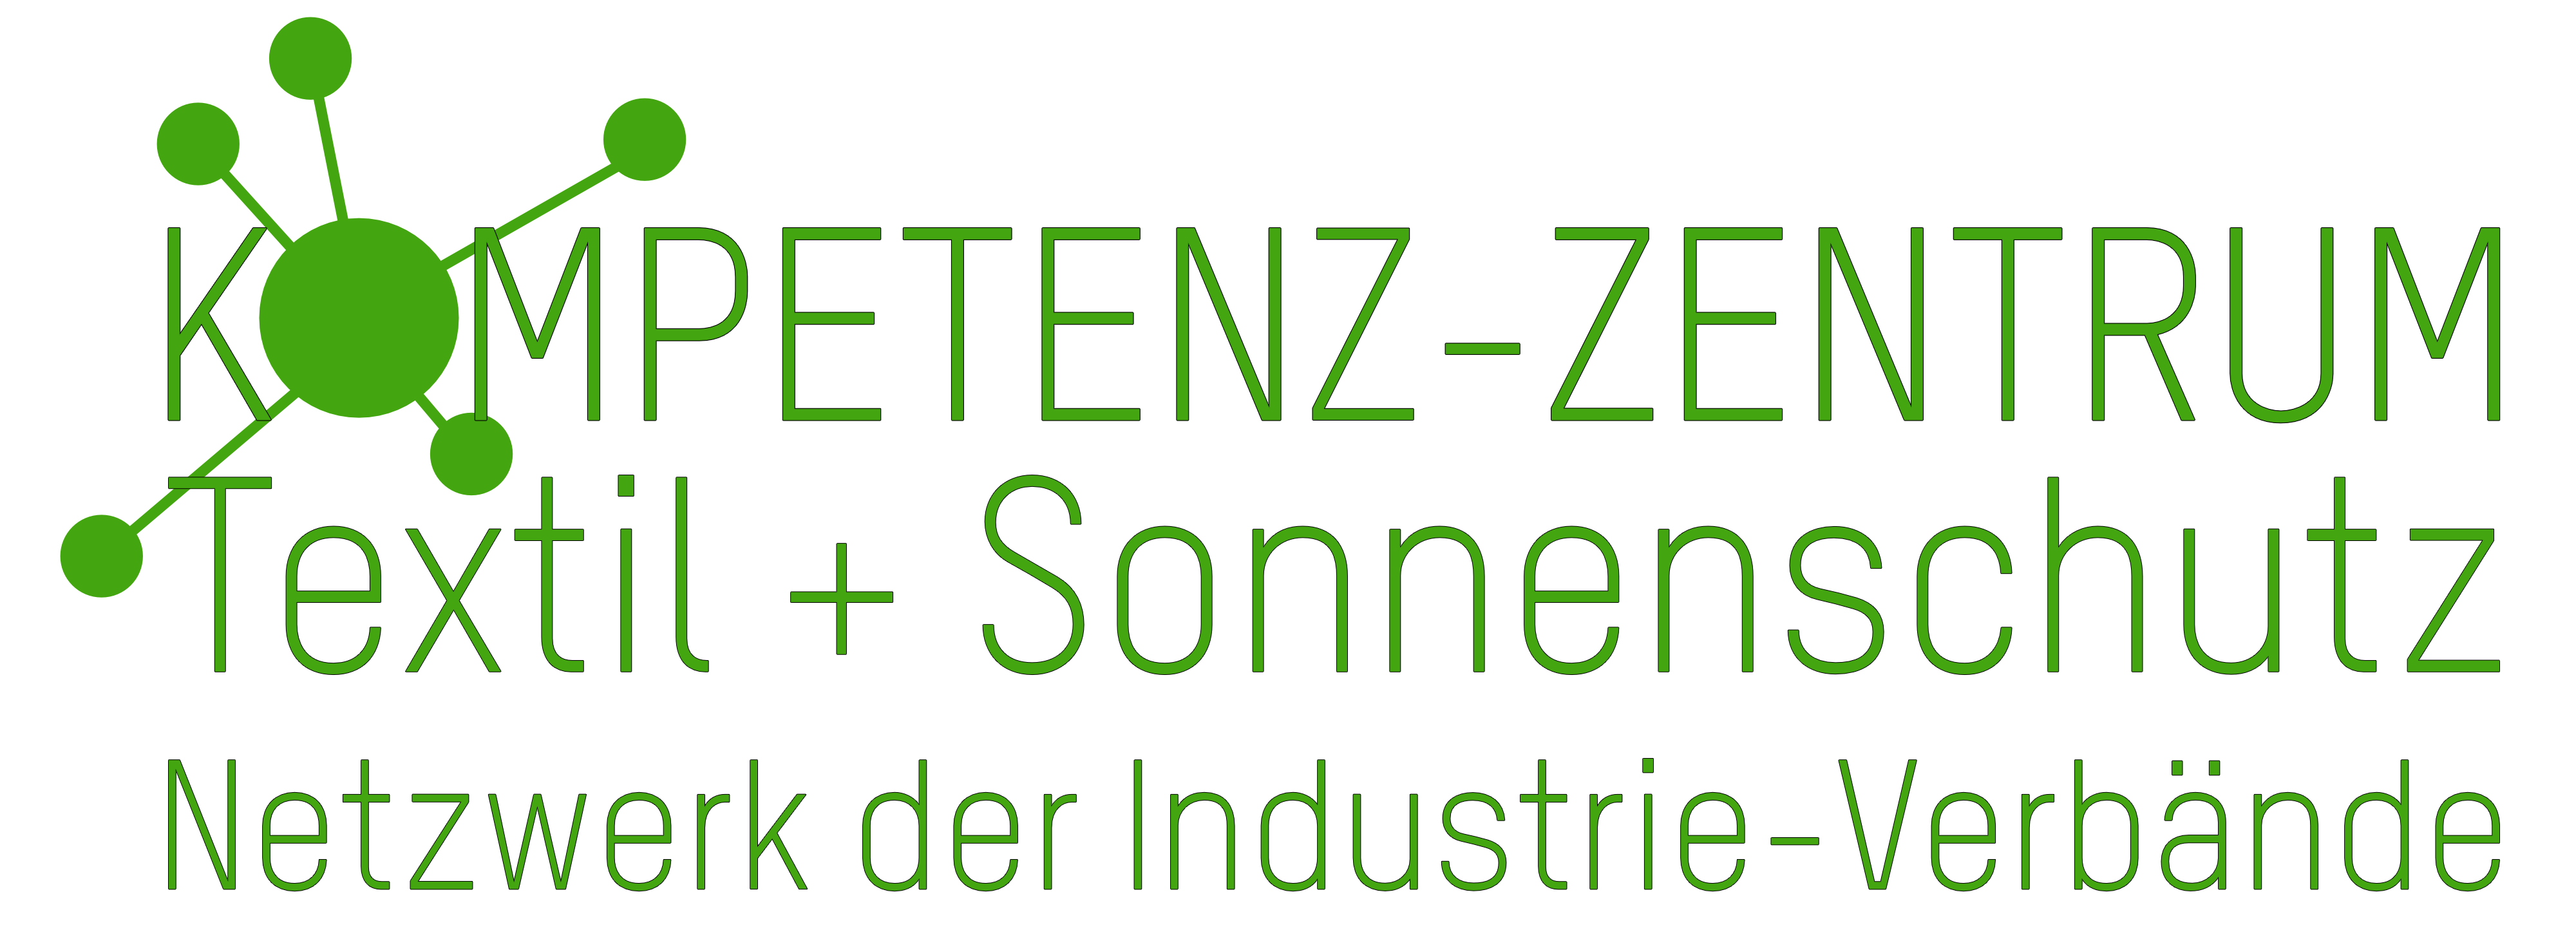 Logo des Kompetenz-Zentrum Textil + Sonnenschutz gruen